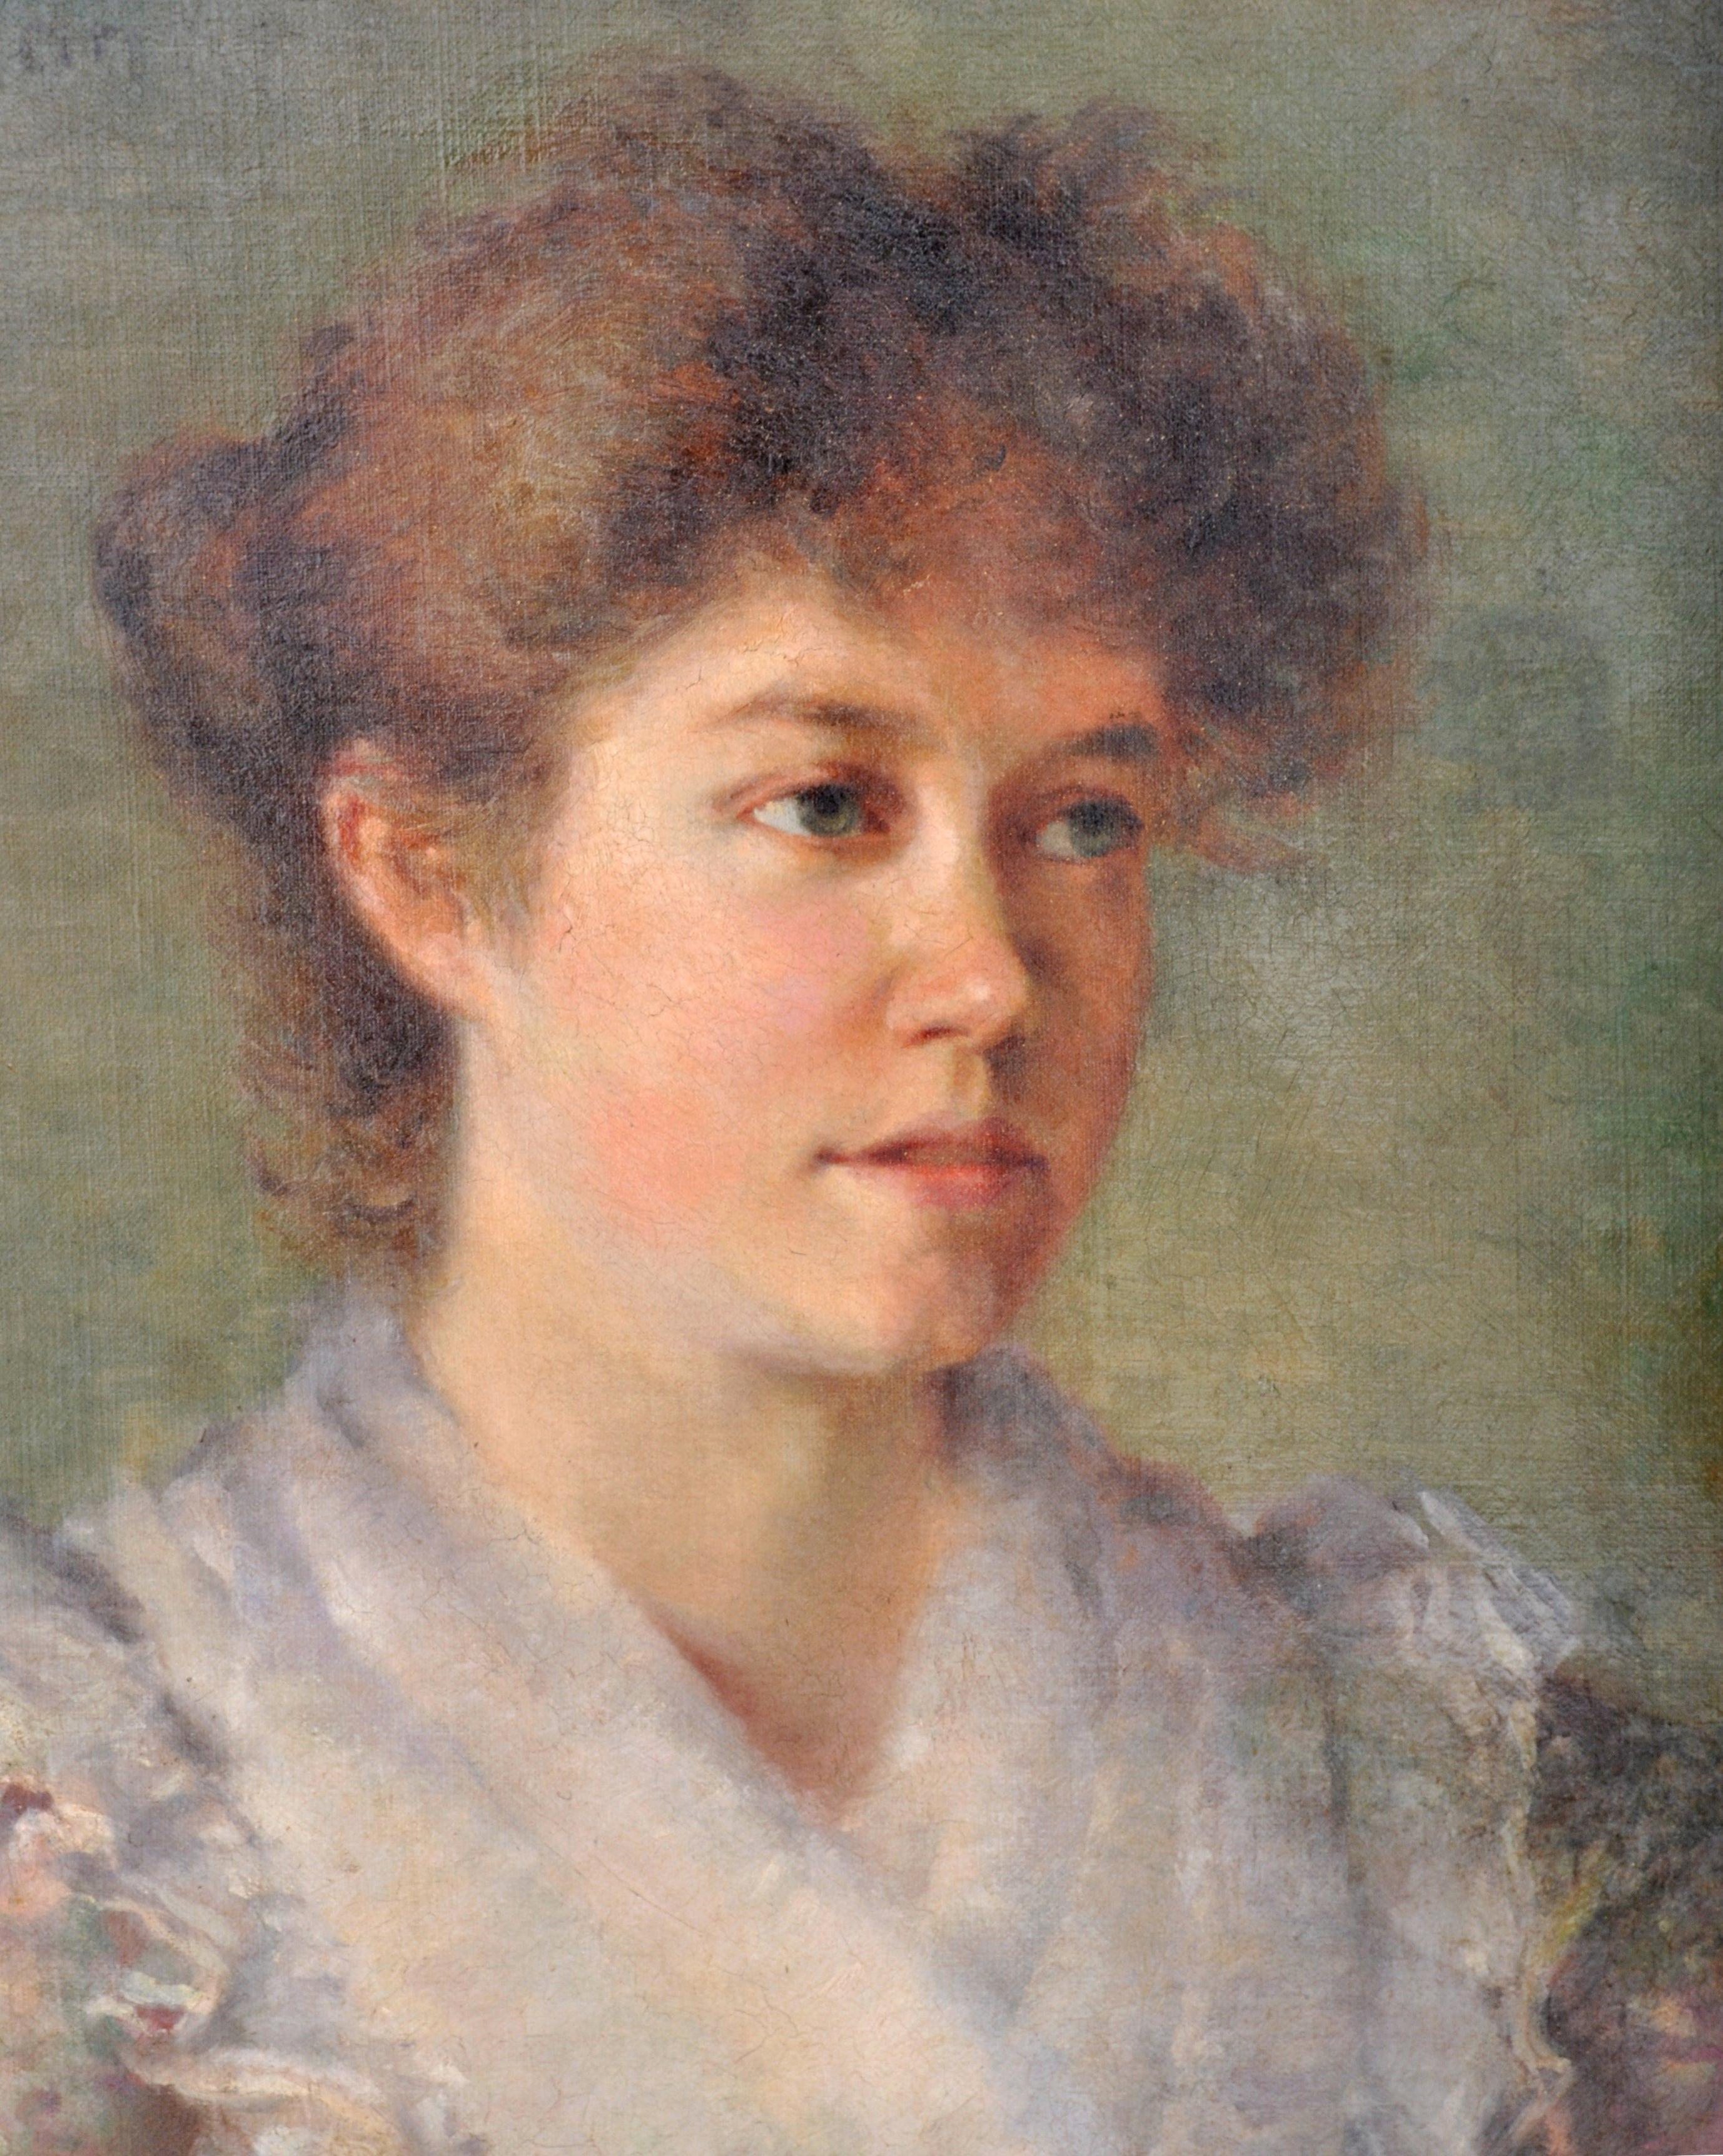 Antikes englisches Ölgemälde auf Leinwand, weibliches Porträt, 1900, spätes 19. Jahrhundert (Braun), Portrait Painting, von F. Norman